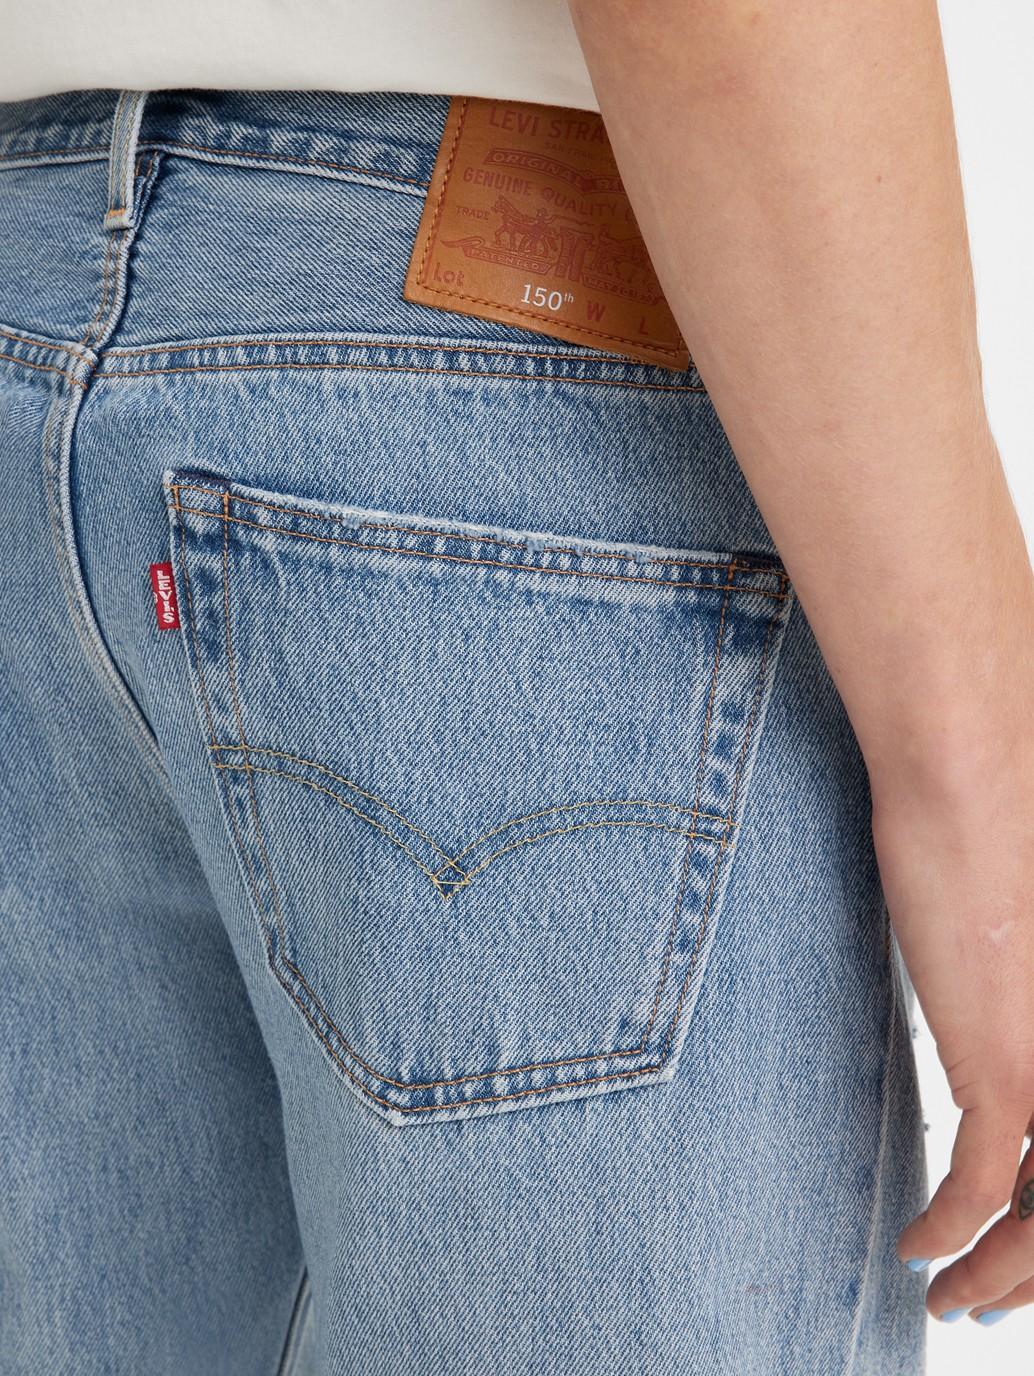 levis singapore mens 501 original jeans 005013385 14 Details